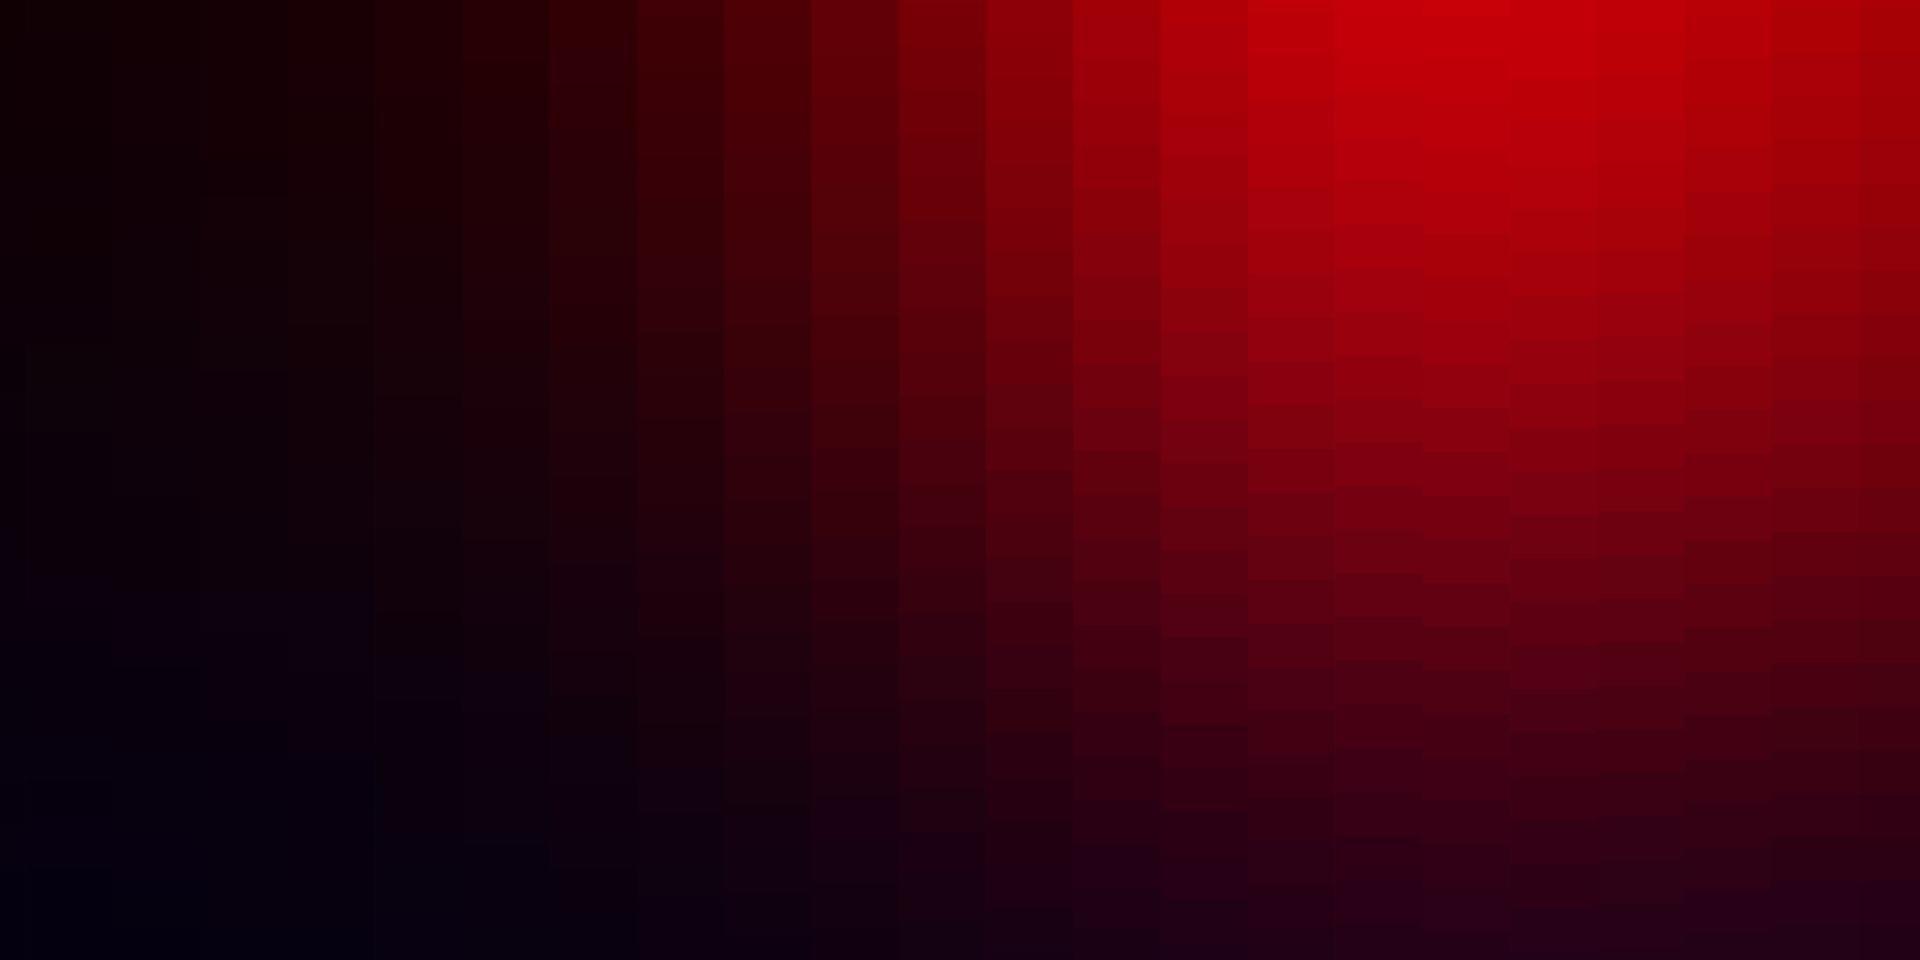 textura de vector azul oscuro, rojo en estilo rectangular.